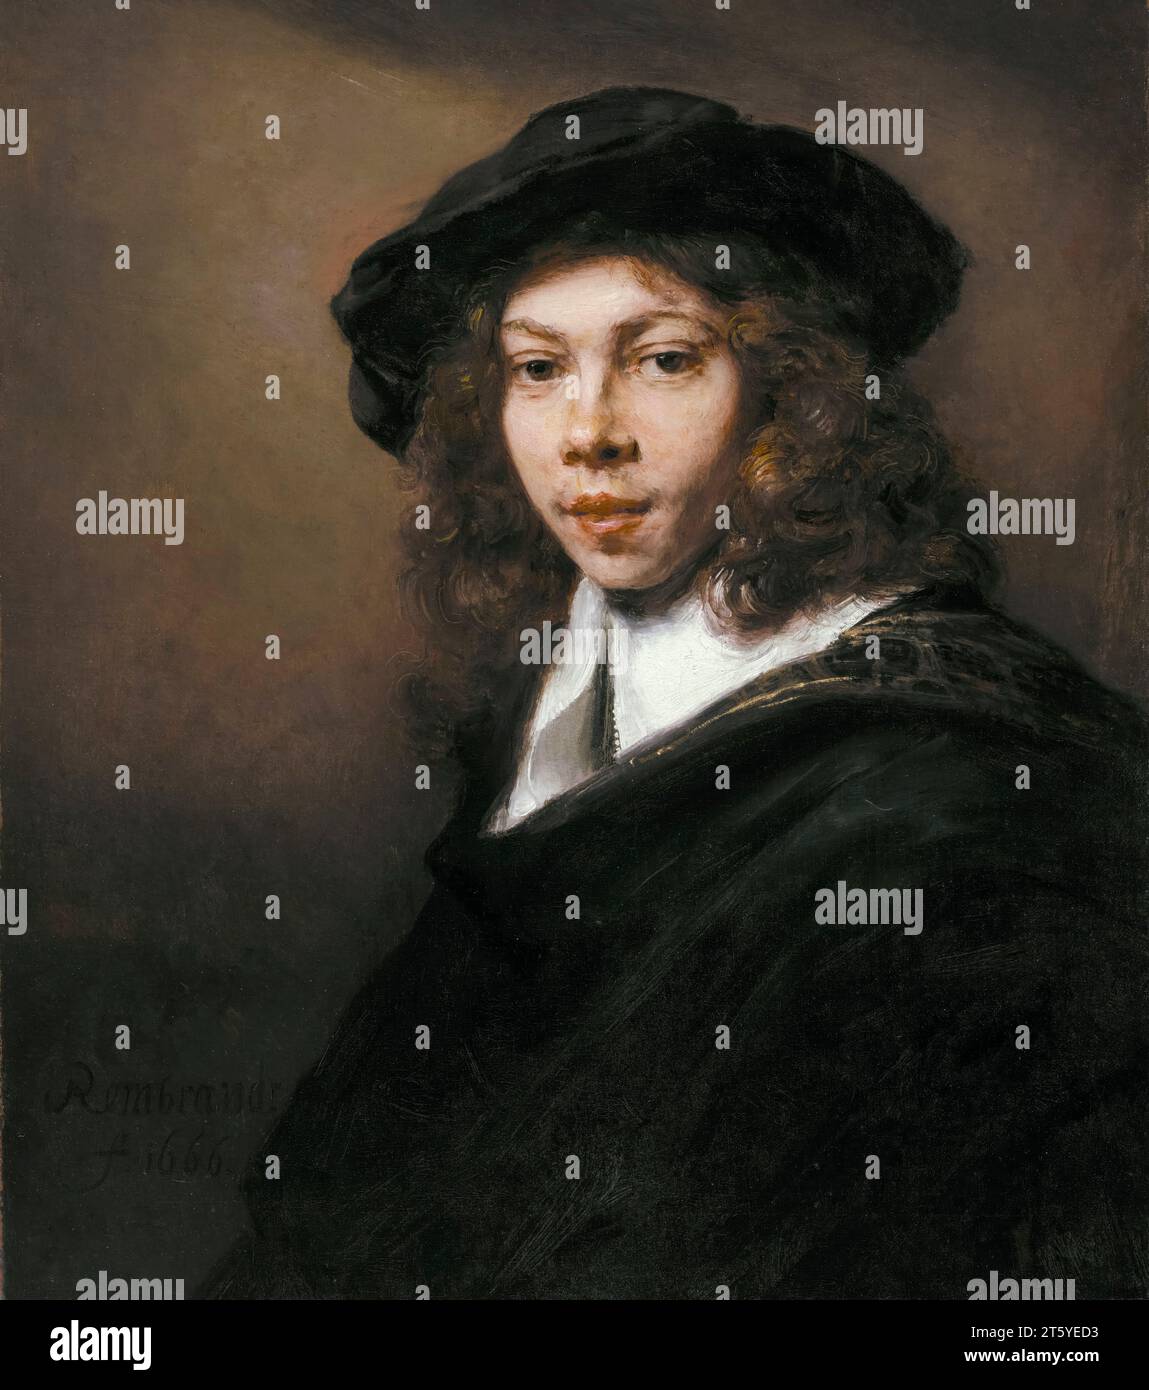 Rembrandt van Rijn, Jeune homme dans un béret noir, portrait à l'huile sur toile, 1666 Banque D'Images